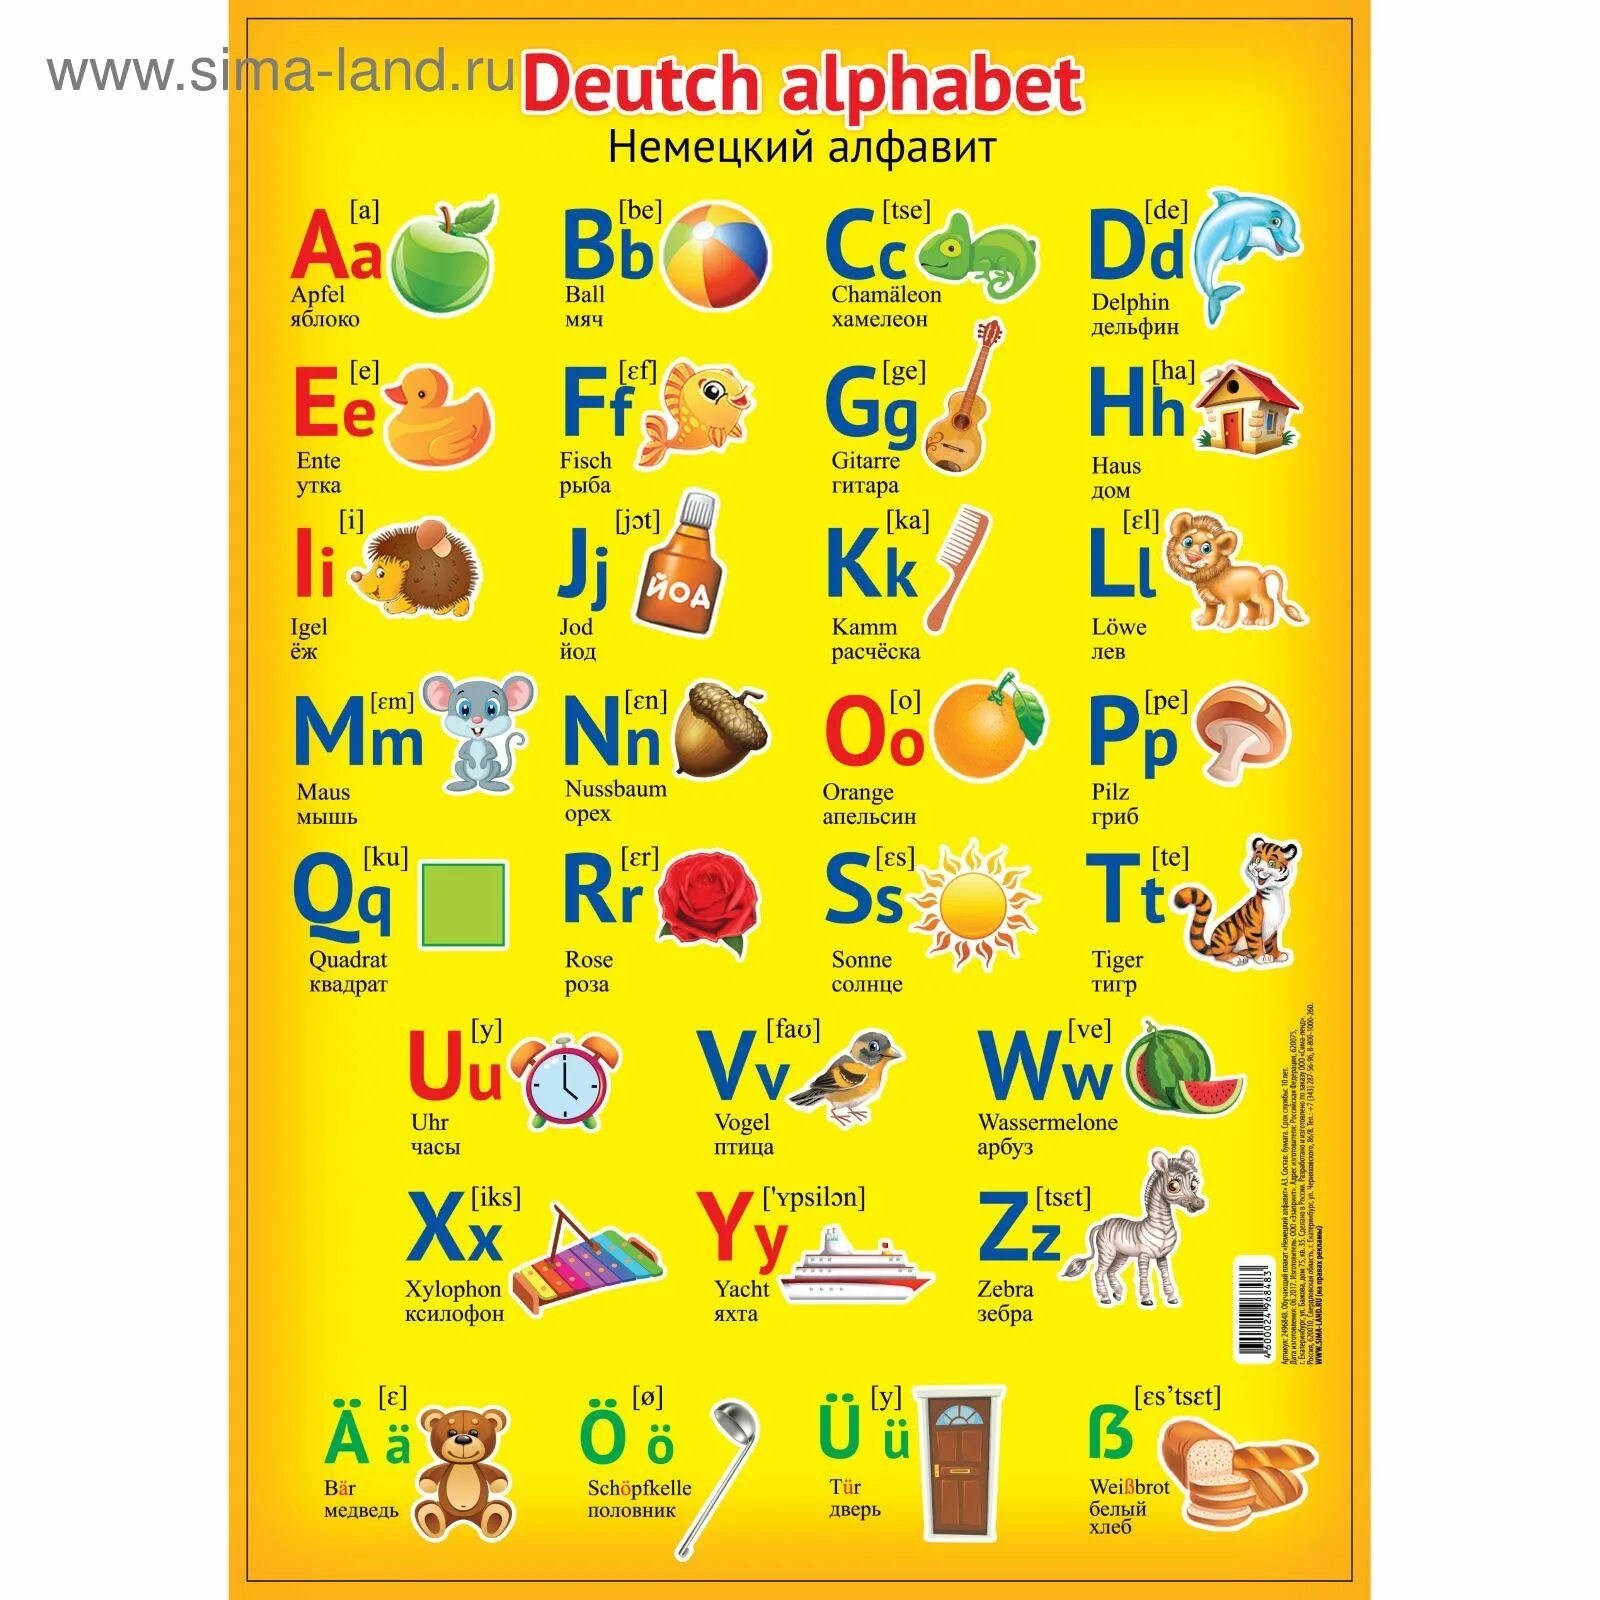 Немецкий алфавит. Немецкий алфавит для детей. Немецкий алфавит с произношением. Алфавит немецкого языка с транскрипцией. Написать немецкие буквы